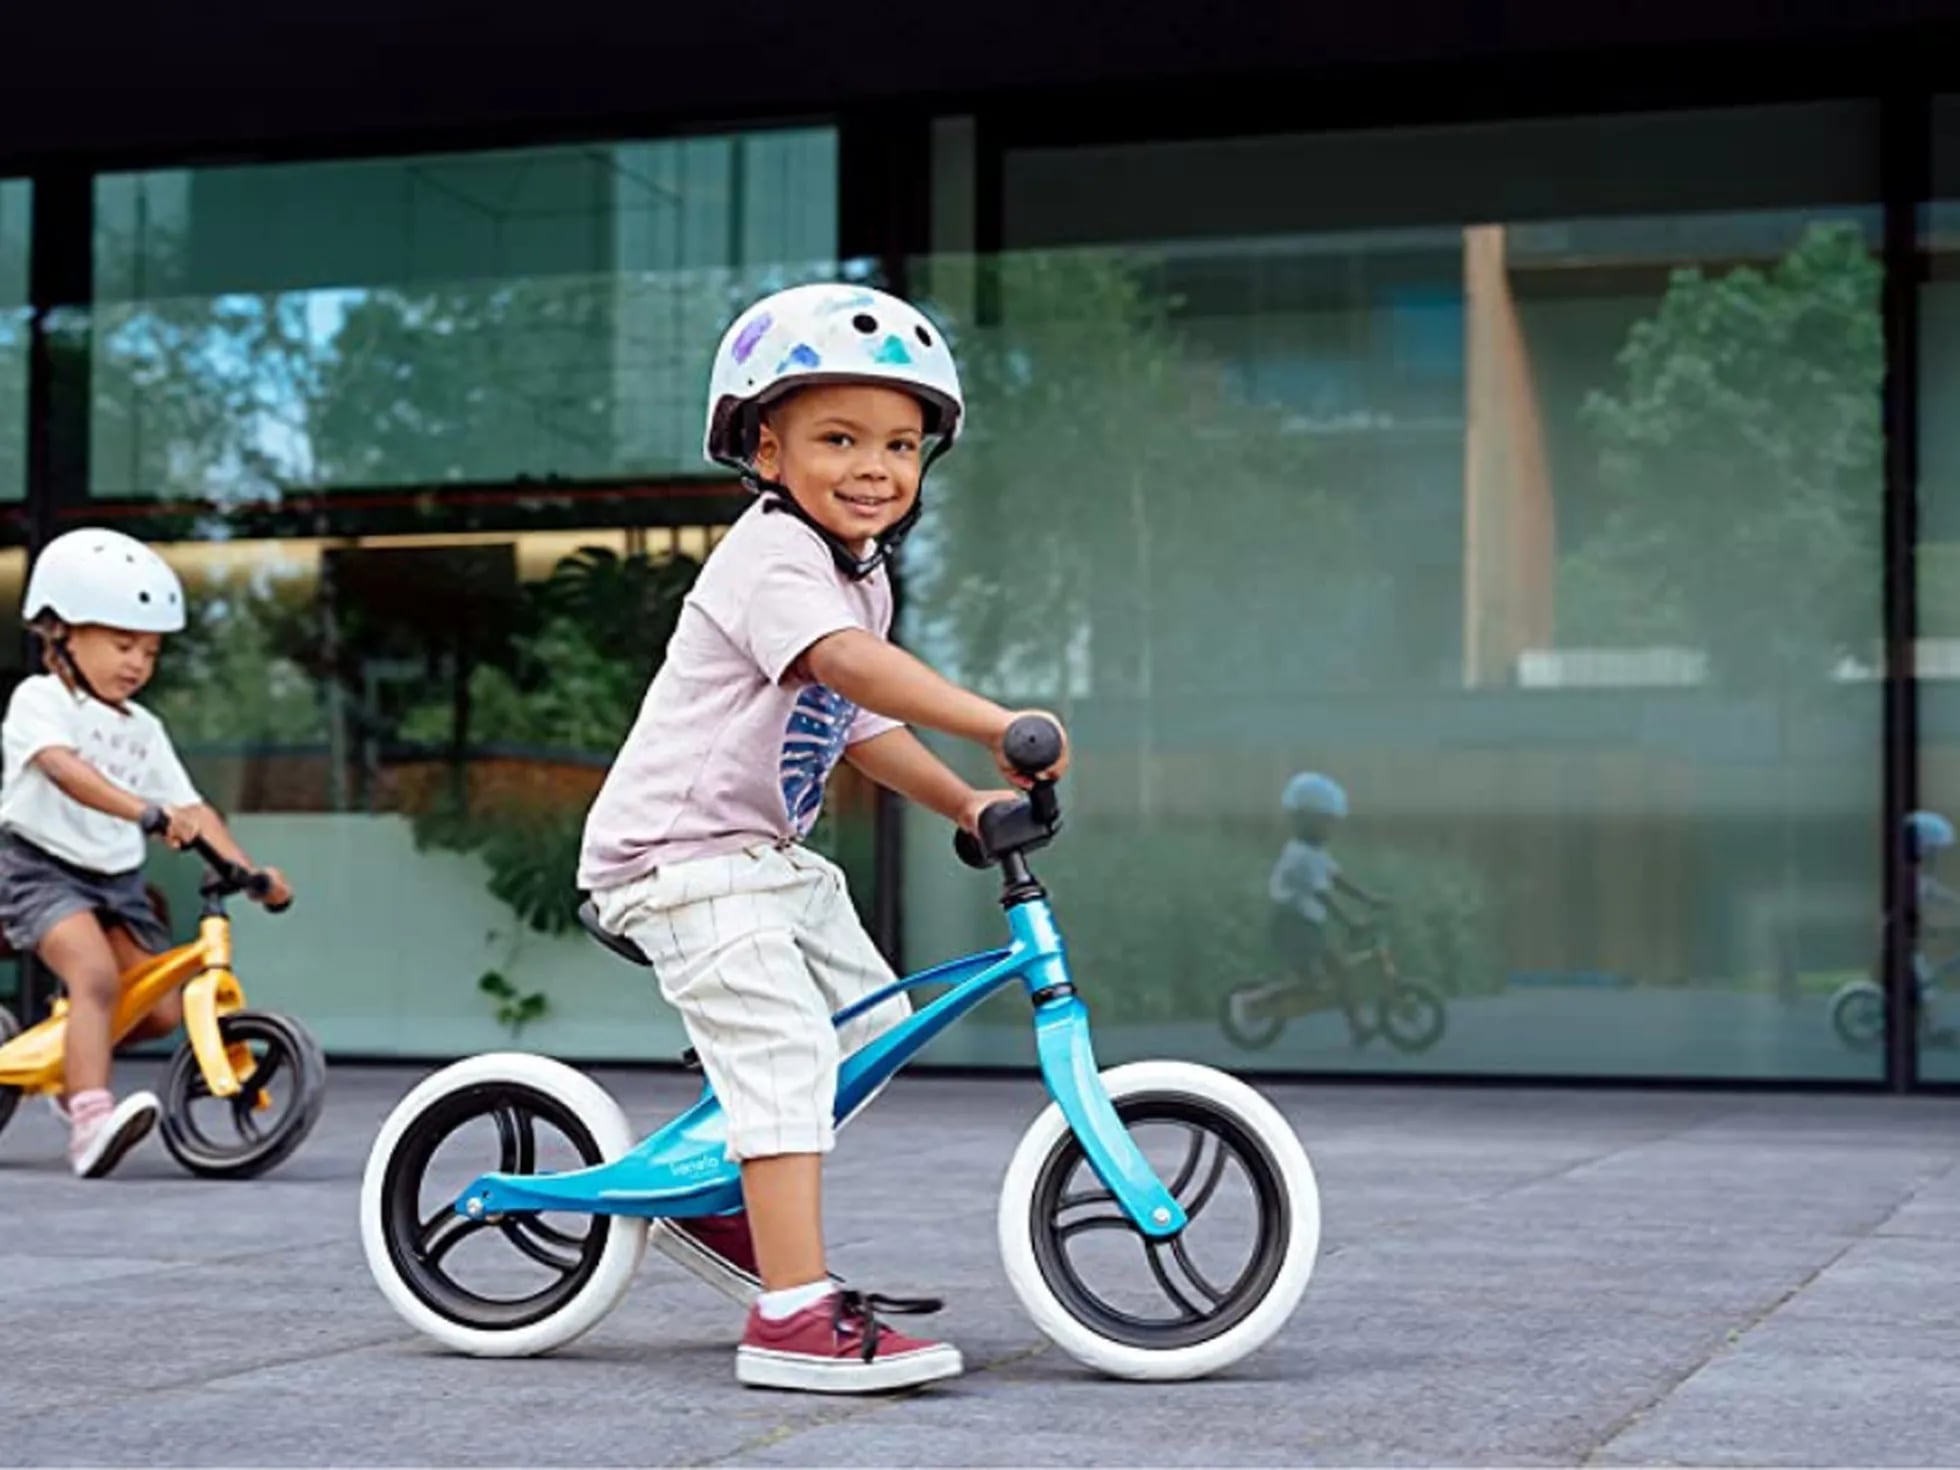 Las mejores bicicletas sin pedales para niños y niñas